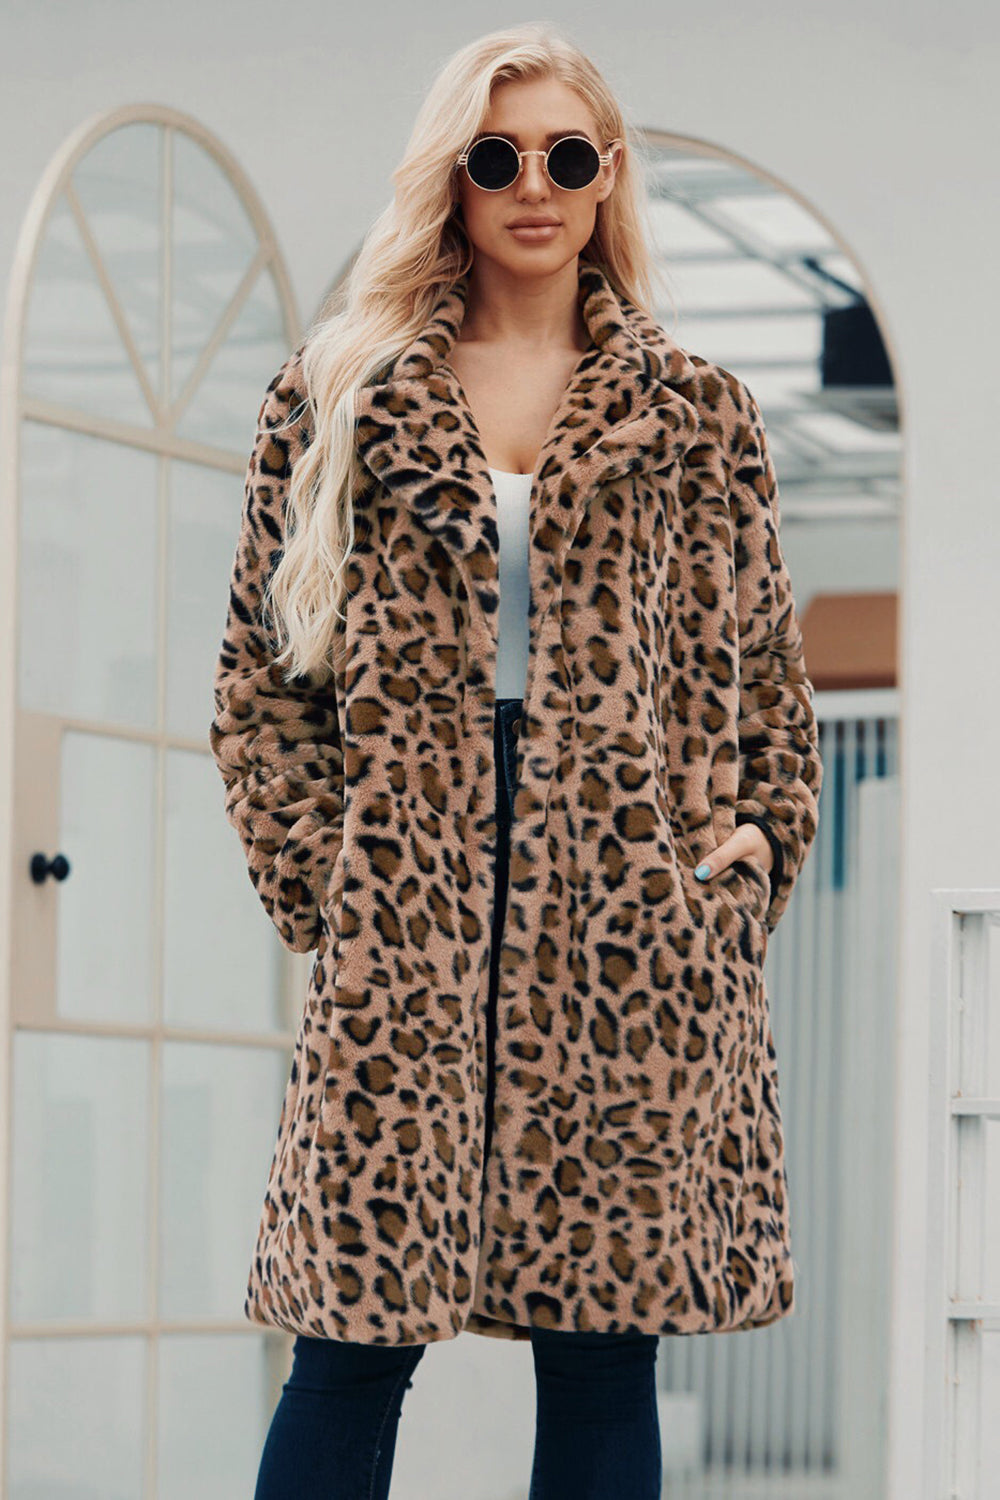 Brauner gekerbter Revers Leoparden Mantel mit Leoparden Drucken für lange Frauen aus Kunstpelz